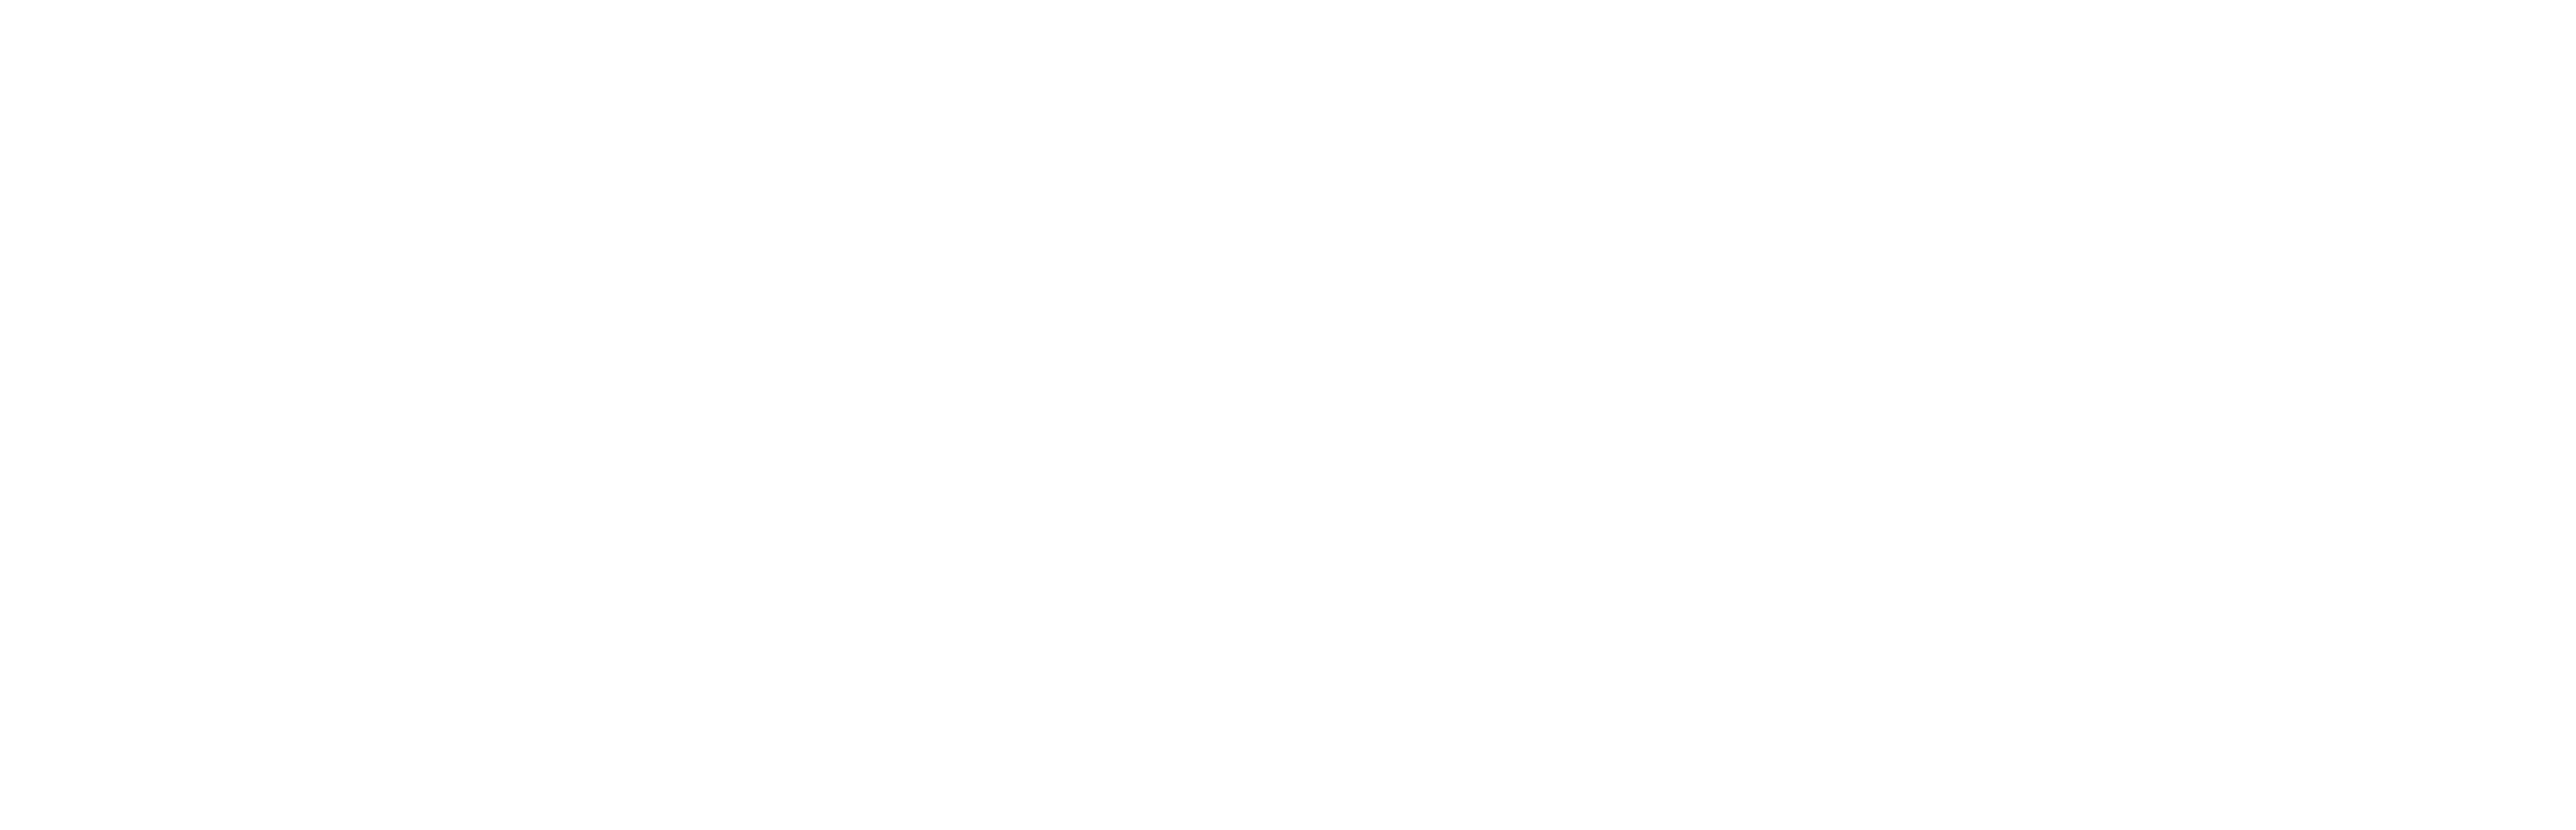 ConstruIT ERP